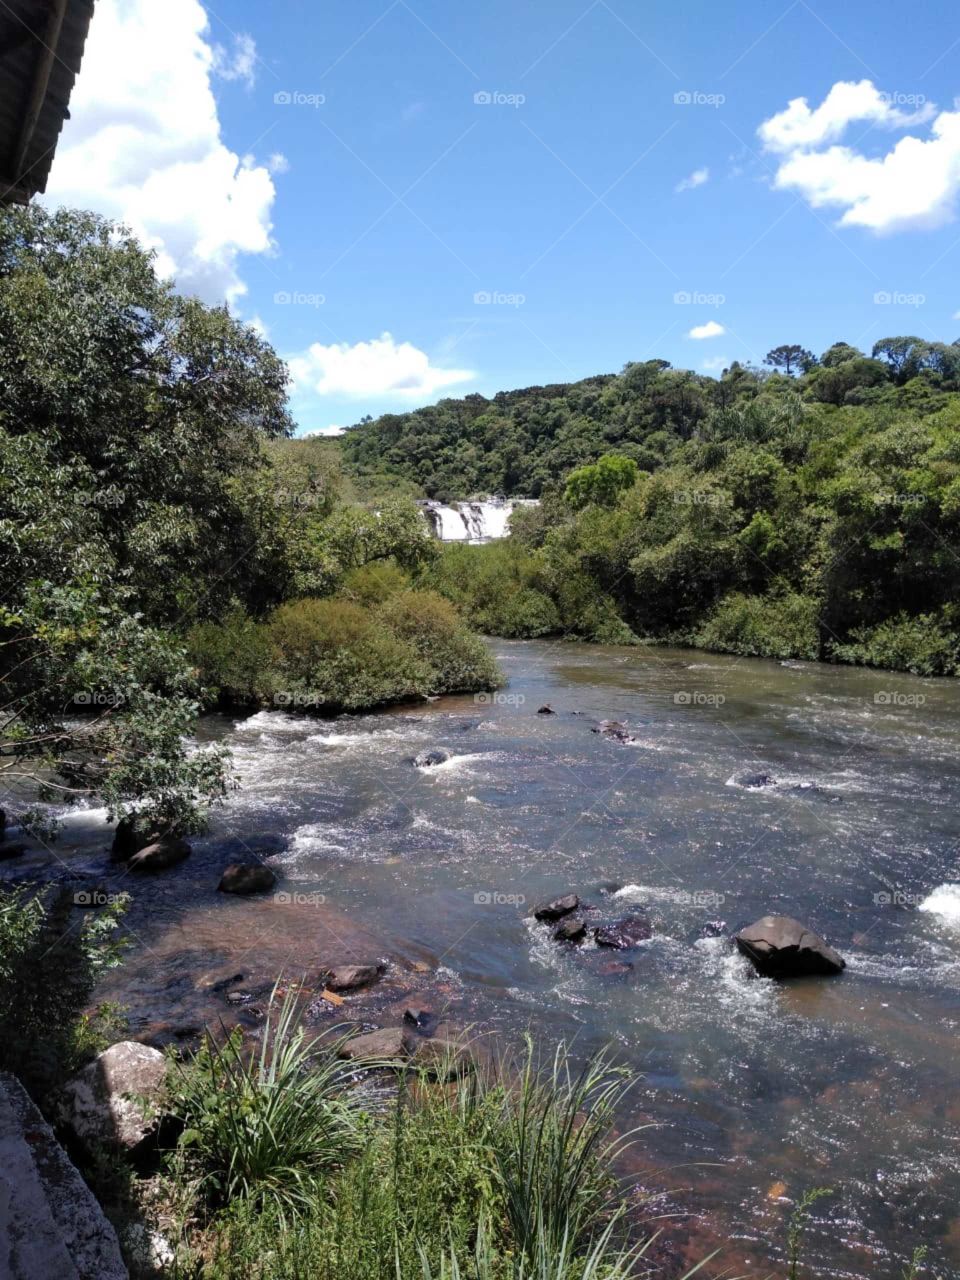 Cachoeira,natureza,Rio,água,paz,pedras,leito,cristalinas,beleza,Mãe Natureza,paisagens.